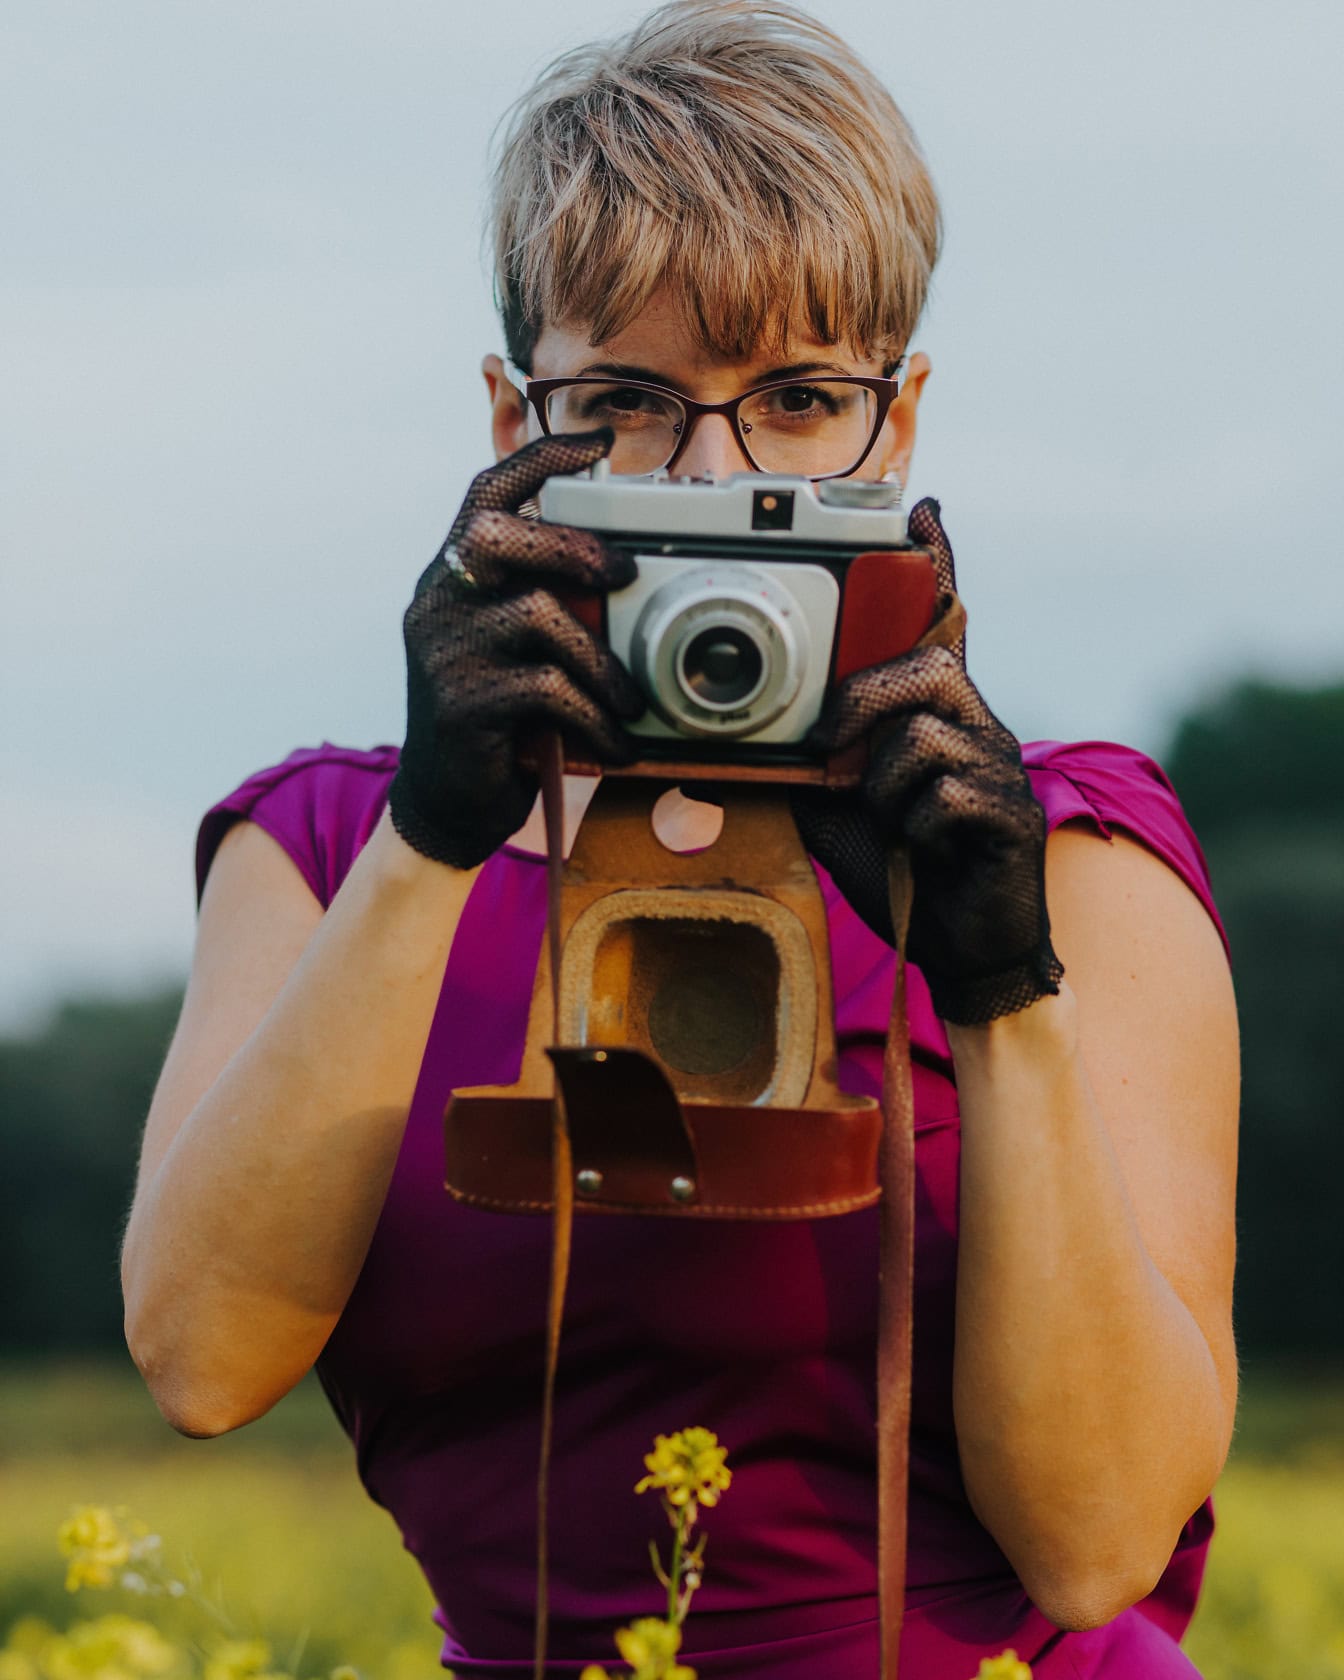 Glamoureus geklede vrouwenfotograaf in een purpere jurk die een oude analoge camera met kanten handschoenen houdt en een foto neemt